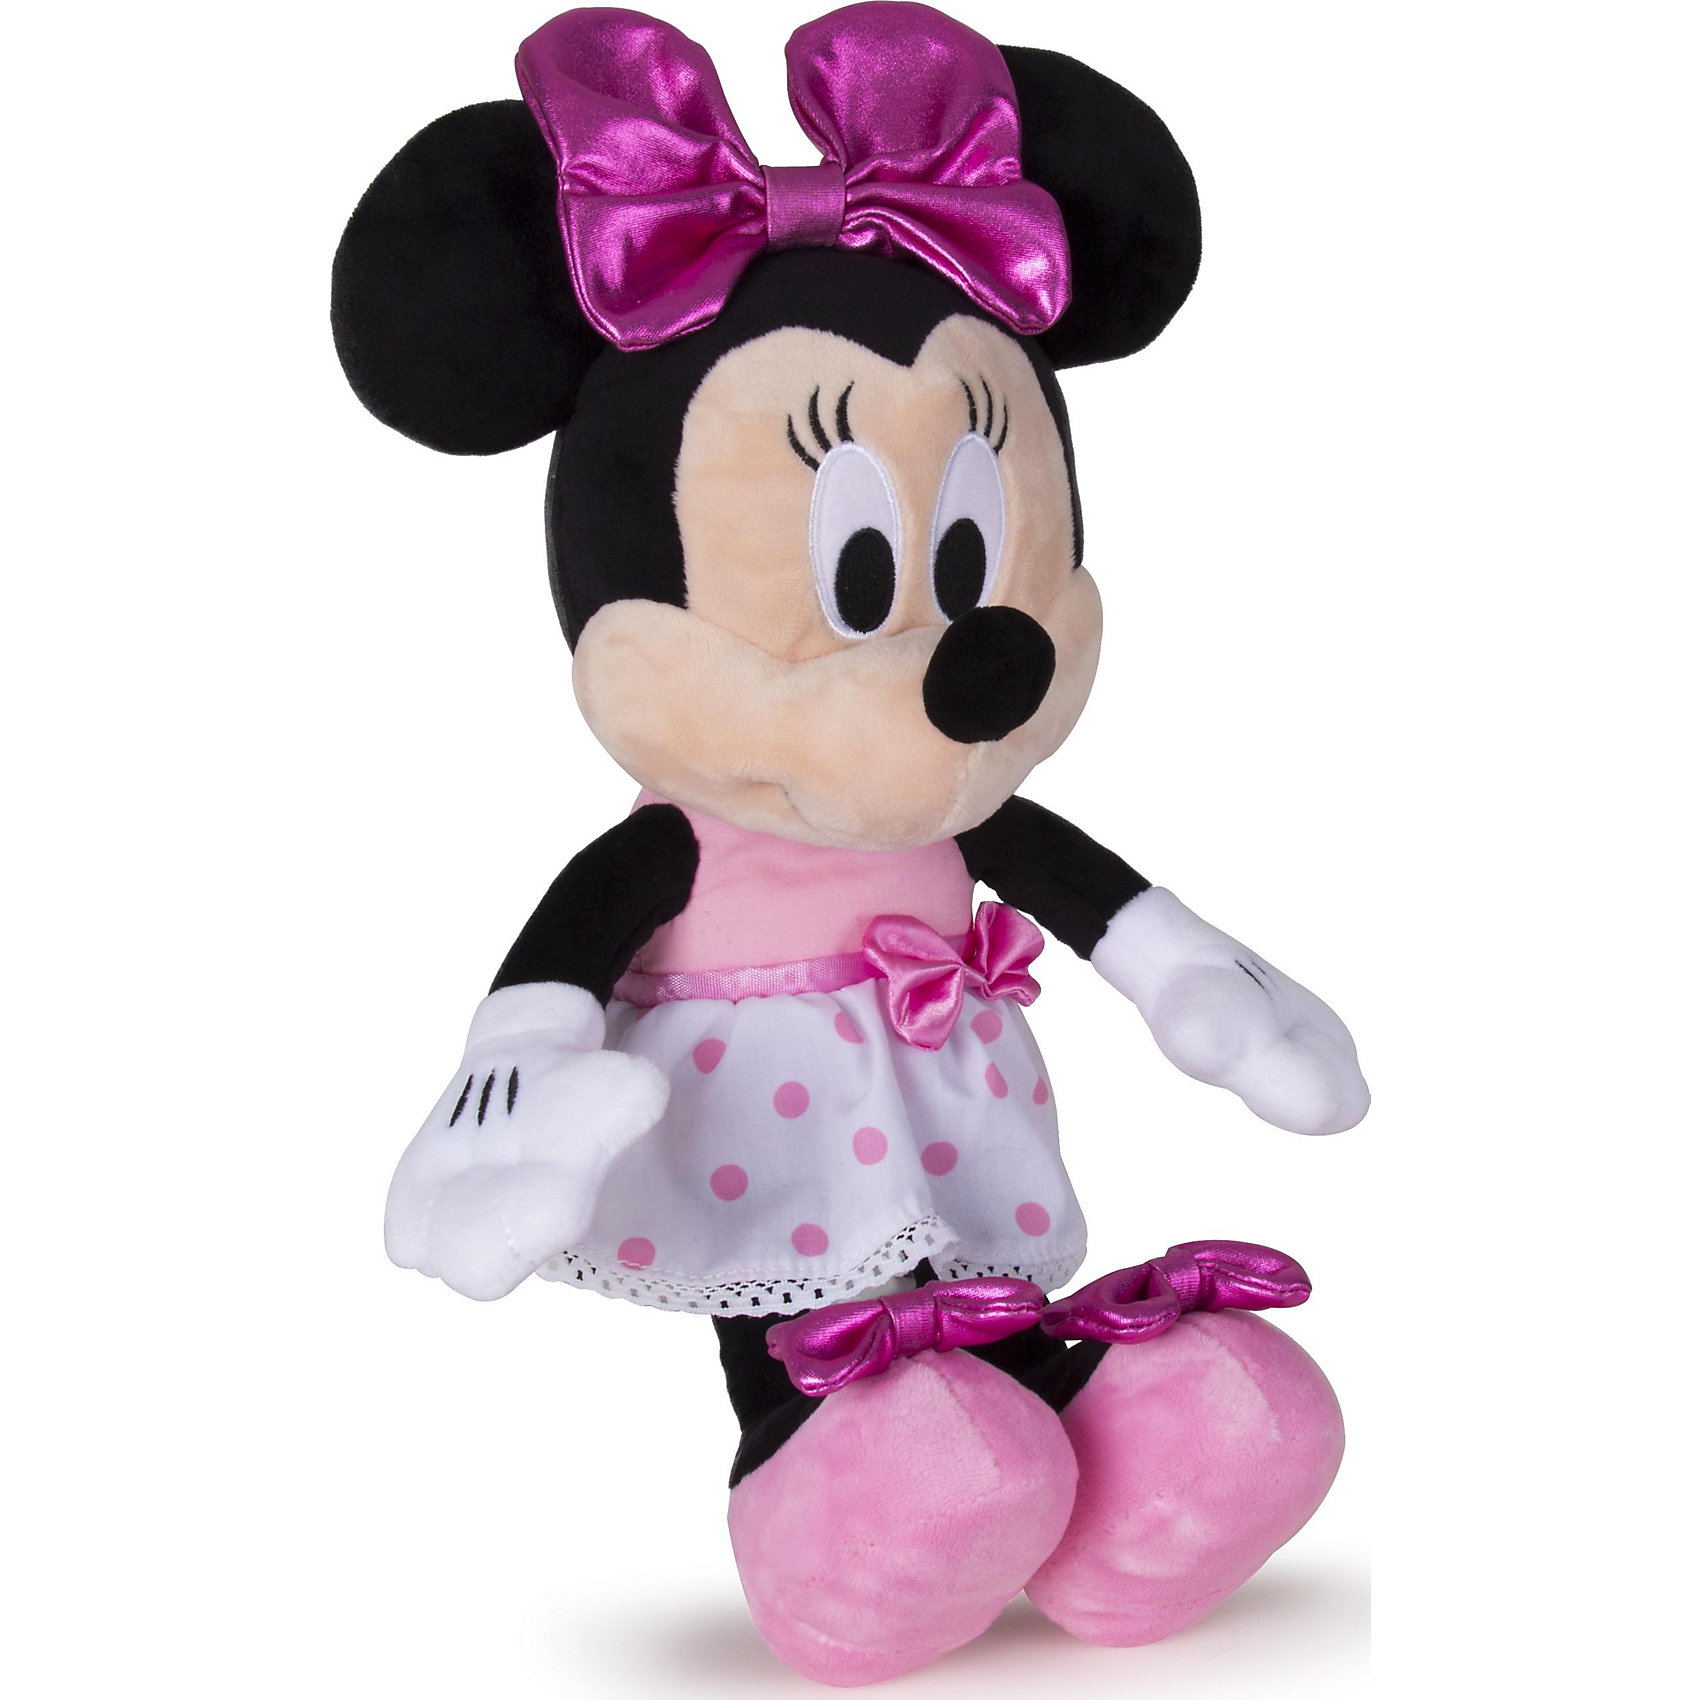 Игрушка минни. Минни Маус игрушка мягкая Disney. Мягкая игрушка Микки Маус Дисней. Минни Маус Дисней игрушка IMC Toys. Minnie Mouse игрушка.